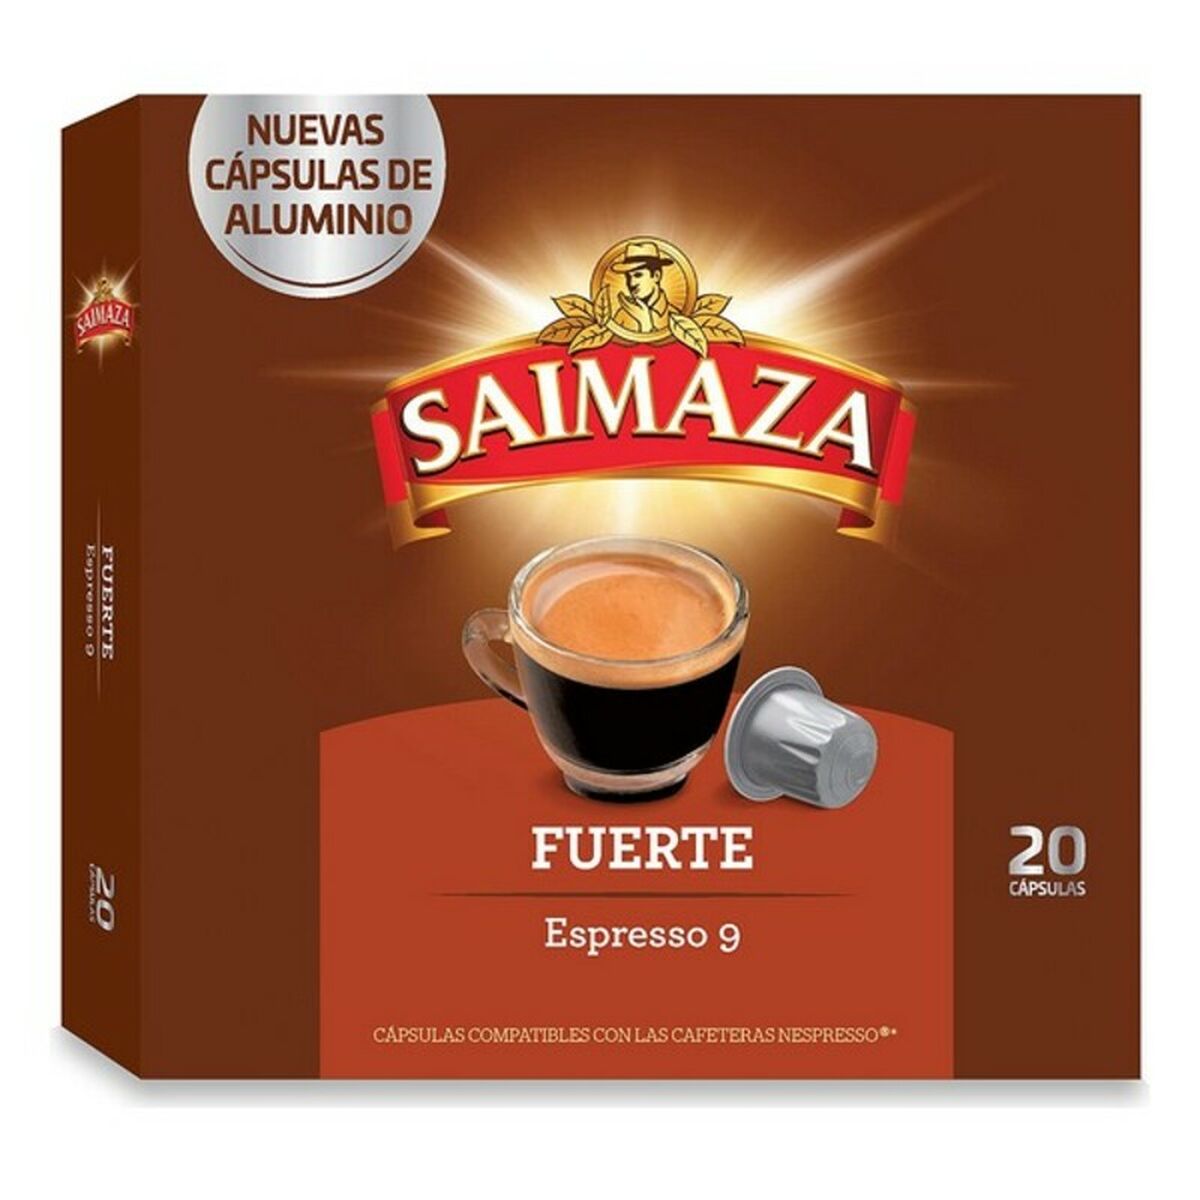 Capsules de café Saimaza Espresso 9 (20 uds)